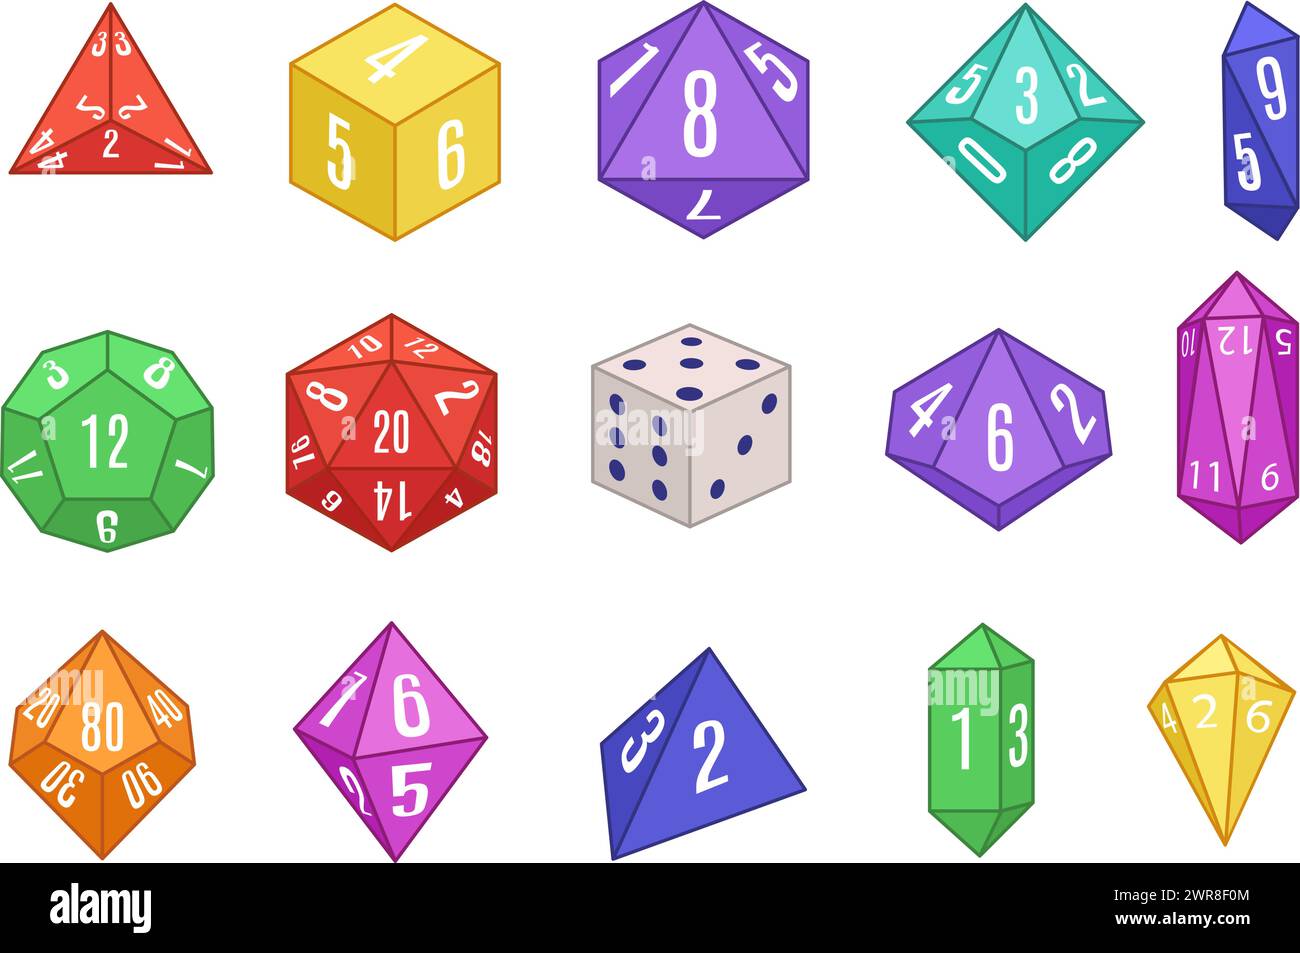 Giochi da tavolo. Set di dadi vari per giochi di ruolo da tavolo, set di illustrazioni vettoriali isolate geometriche a più lati Illustrazione Vettoriale